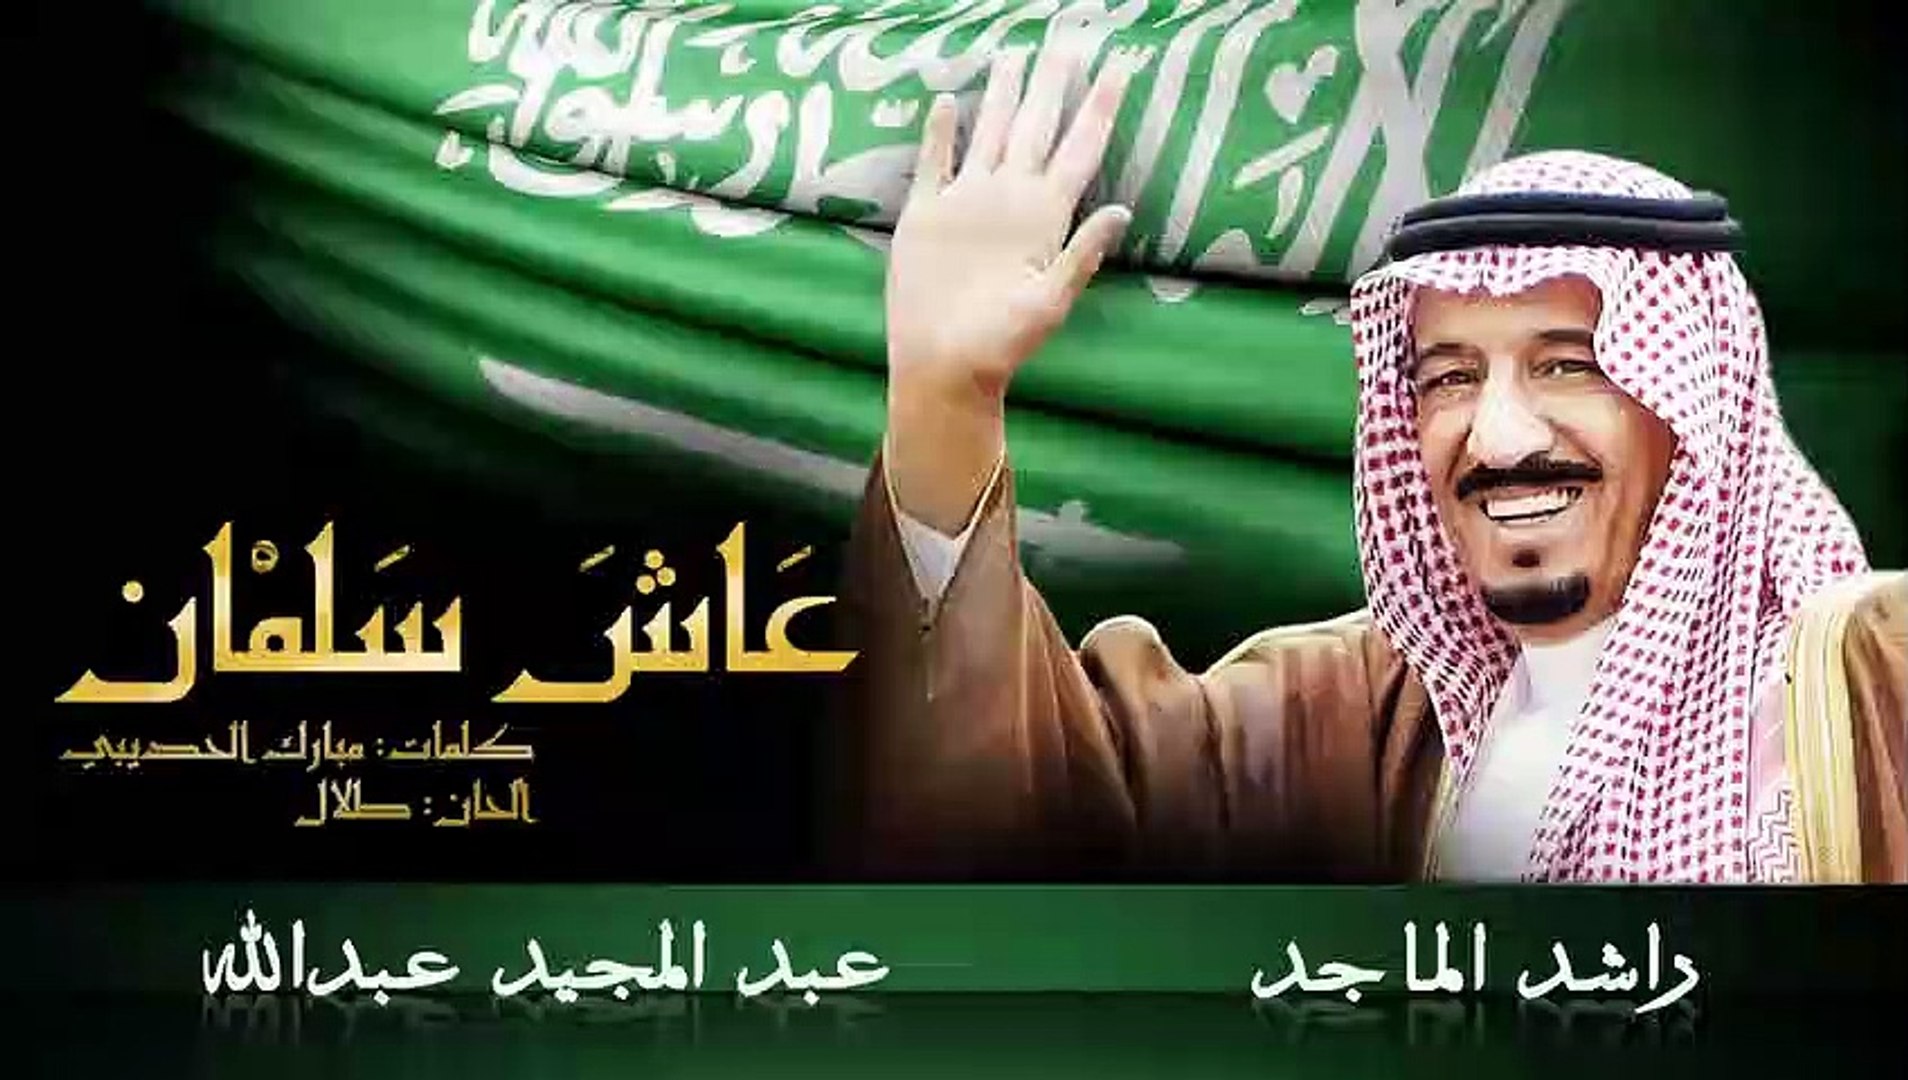 كلمات اغاني شعبية سعودية - فيديو Dailymotion